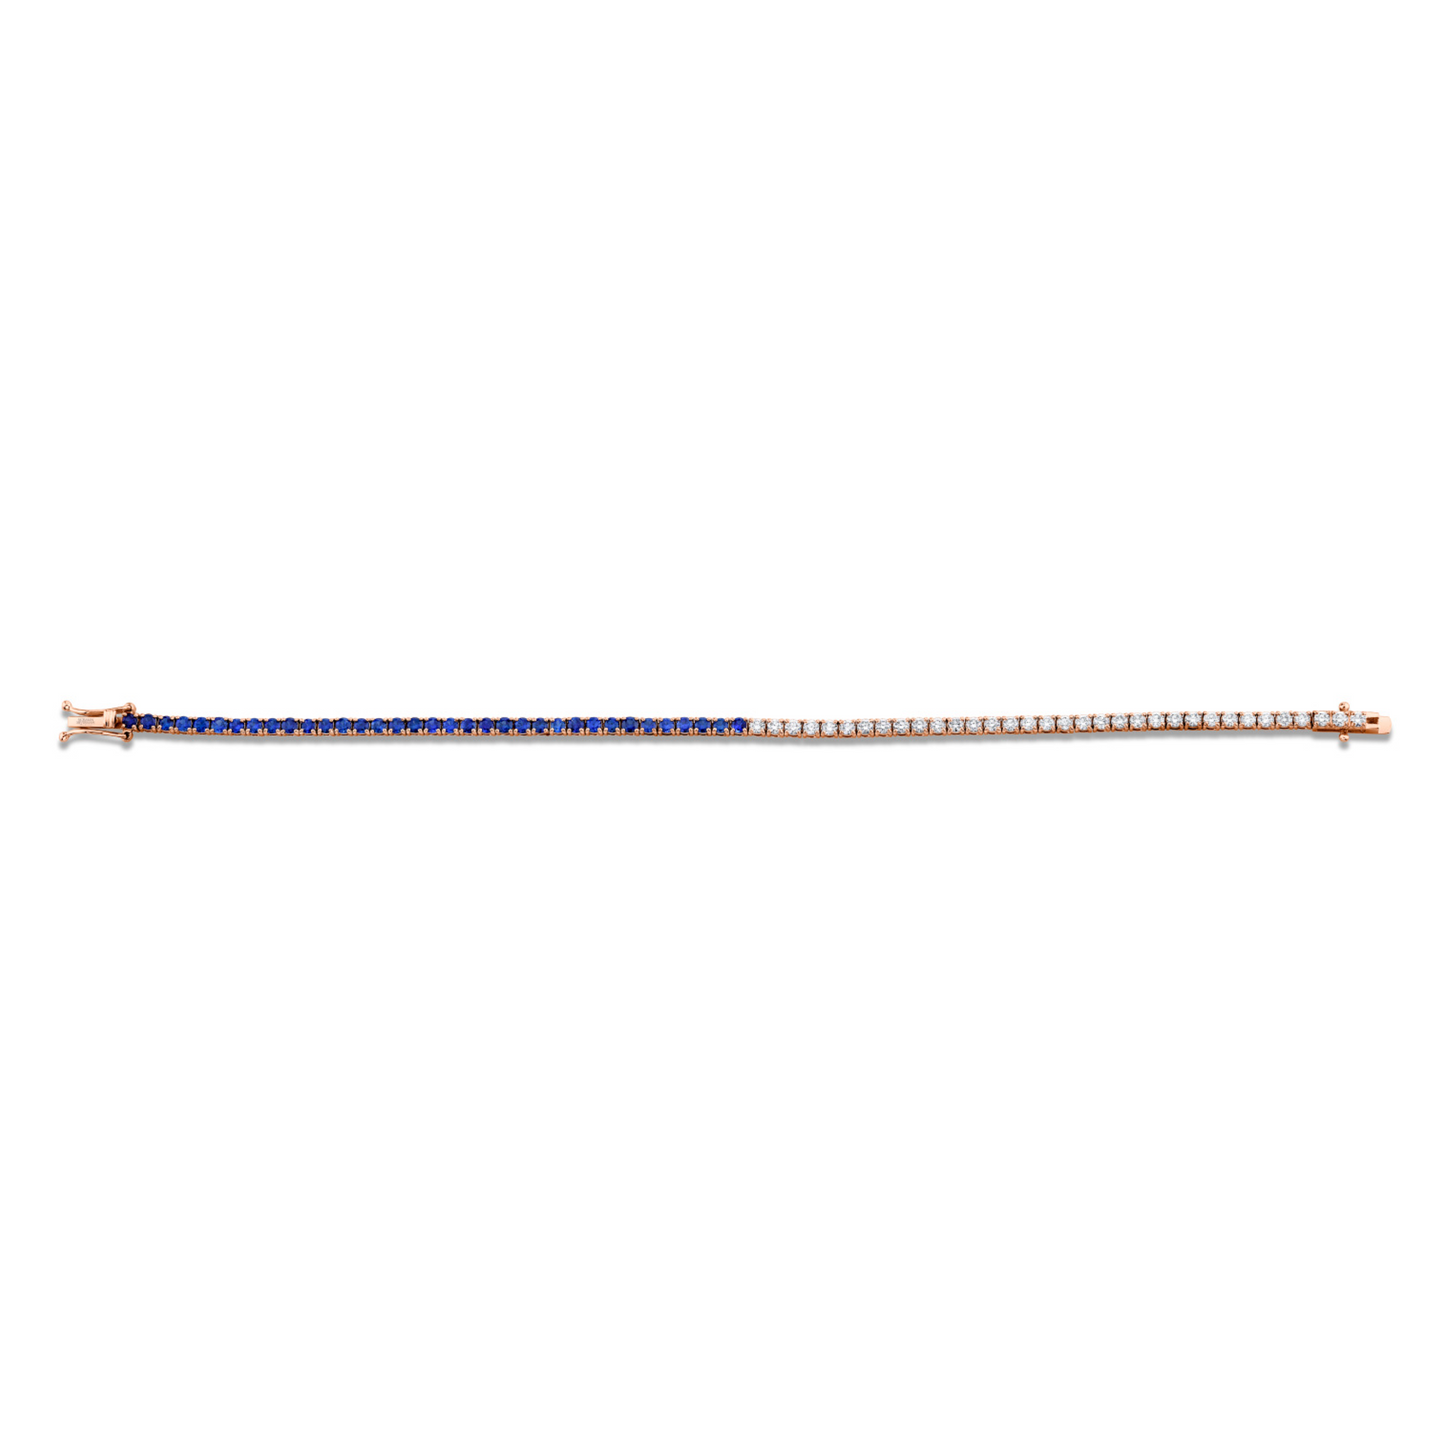 3.20 Carat 18k White Gold Straight Line Bracelet